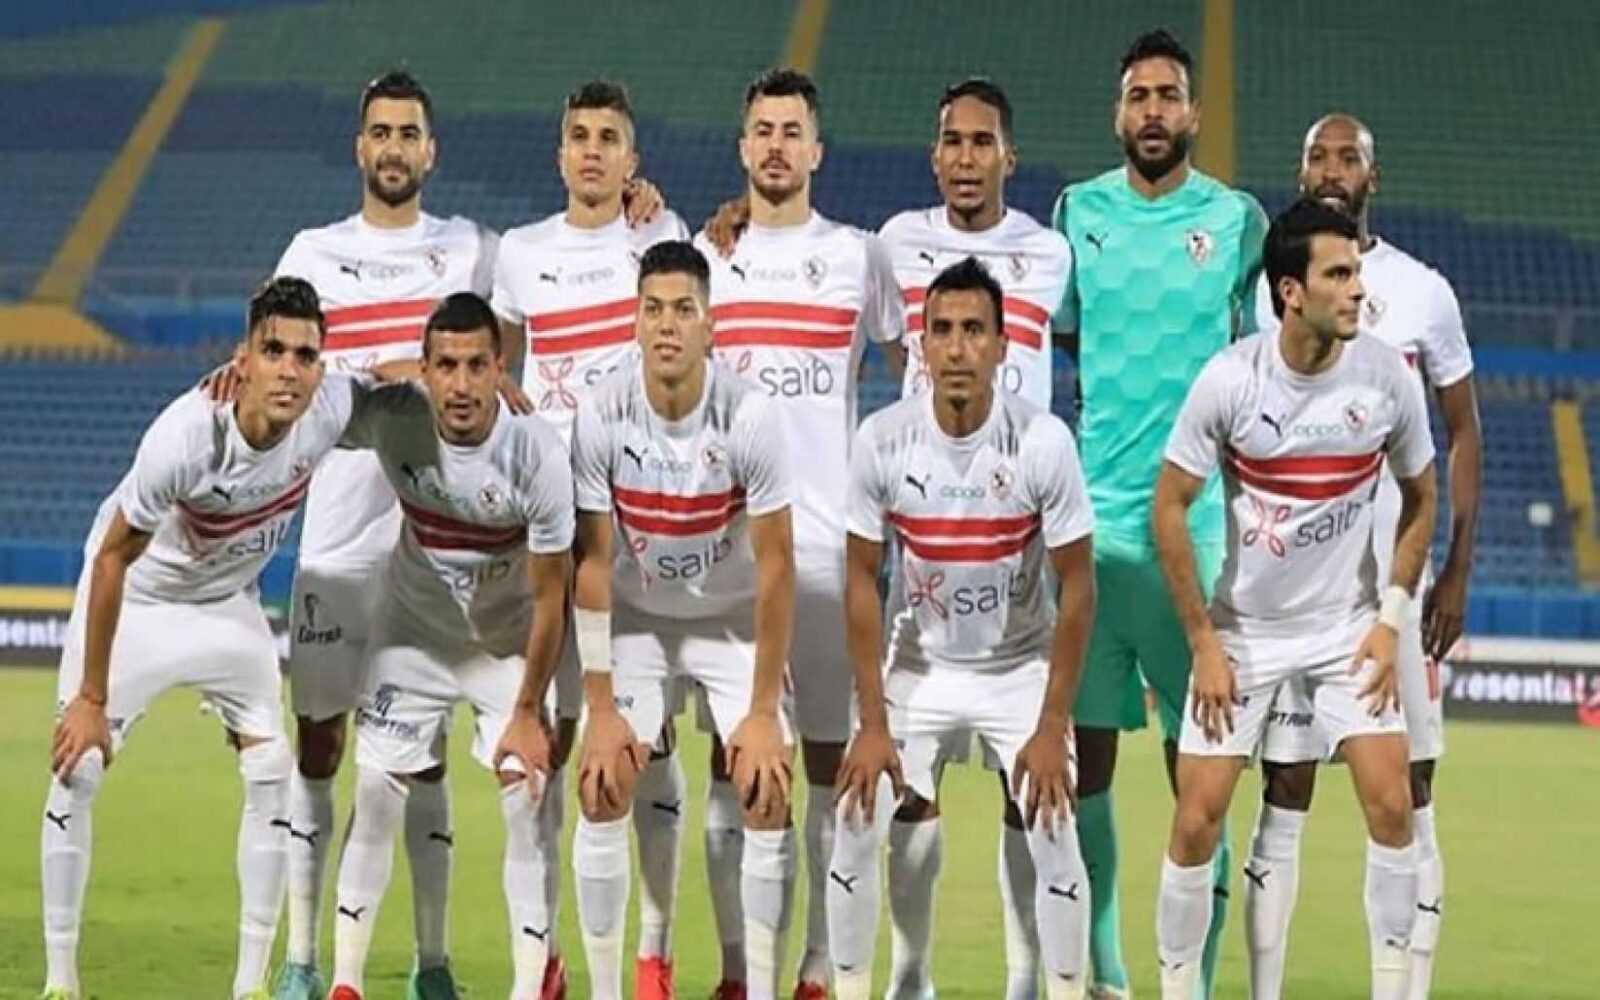 القنوات المفتوحة الناقلة لمباراة الزمالك والوداد المغربي في دوري أبطال إفريقيا 2022